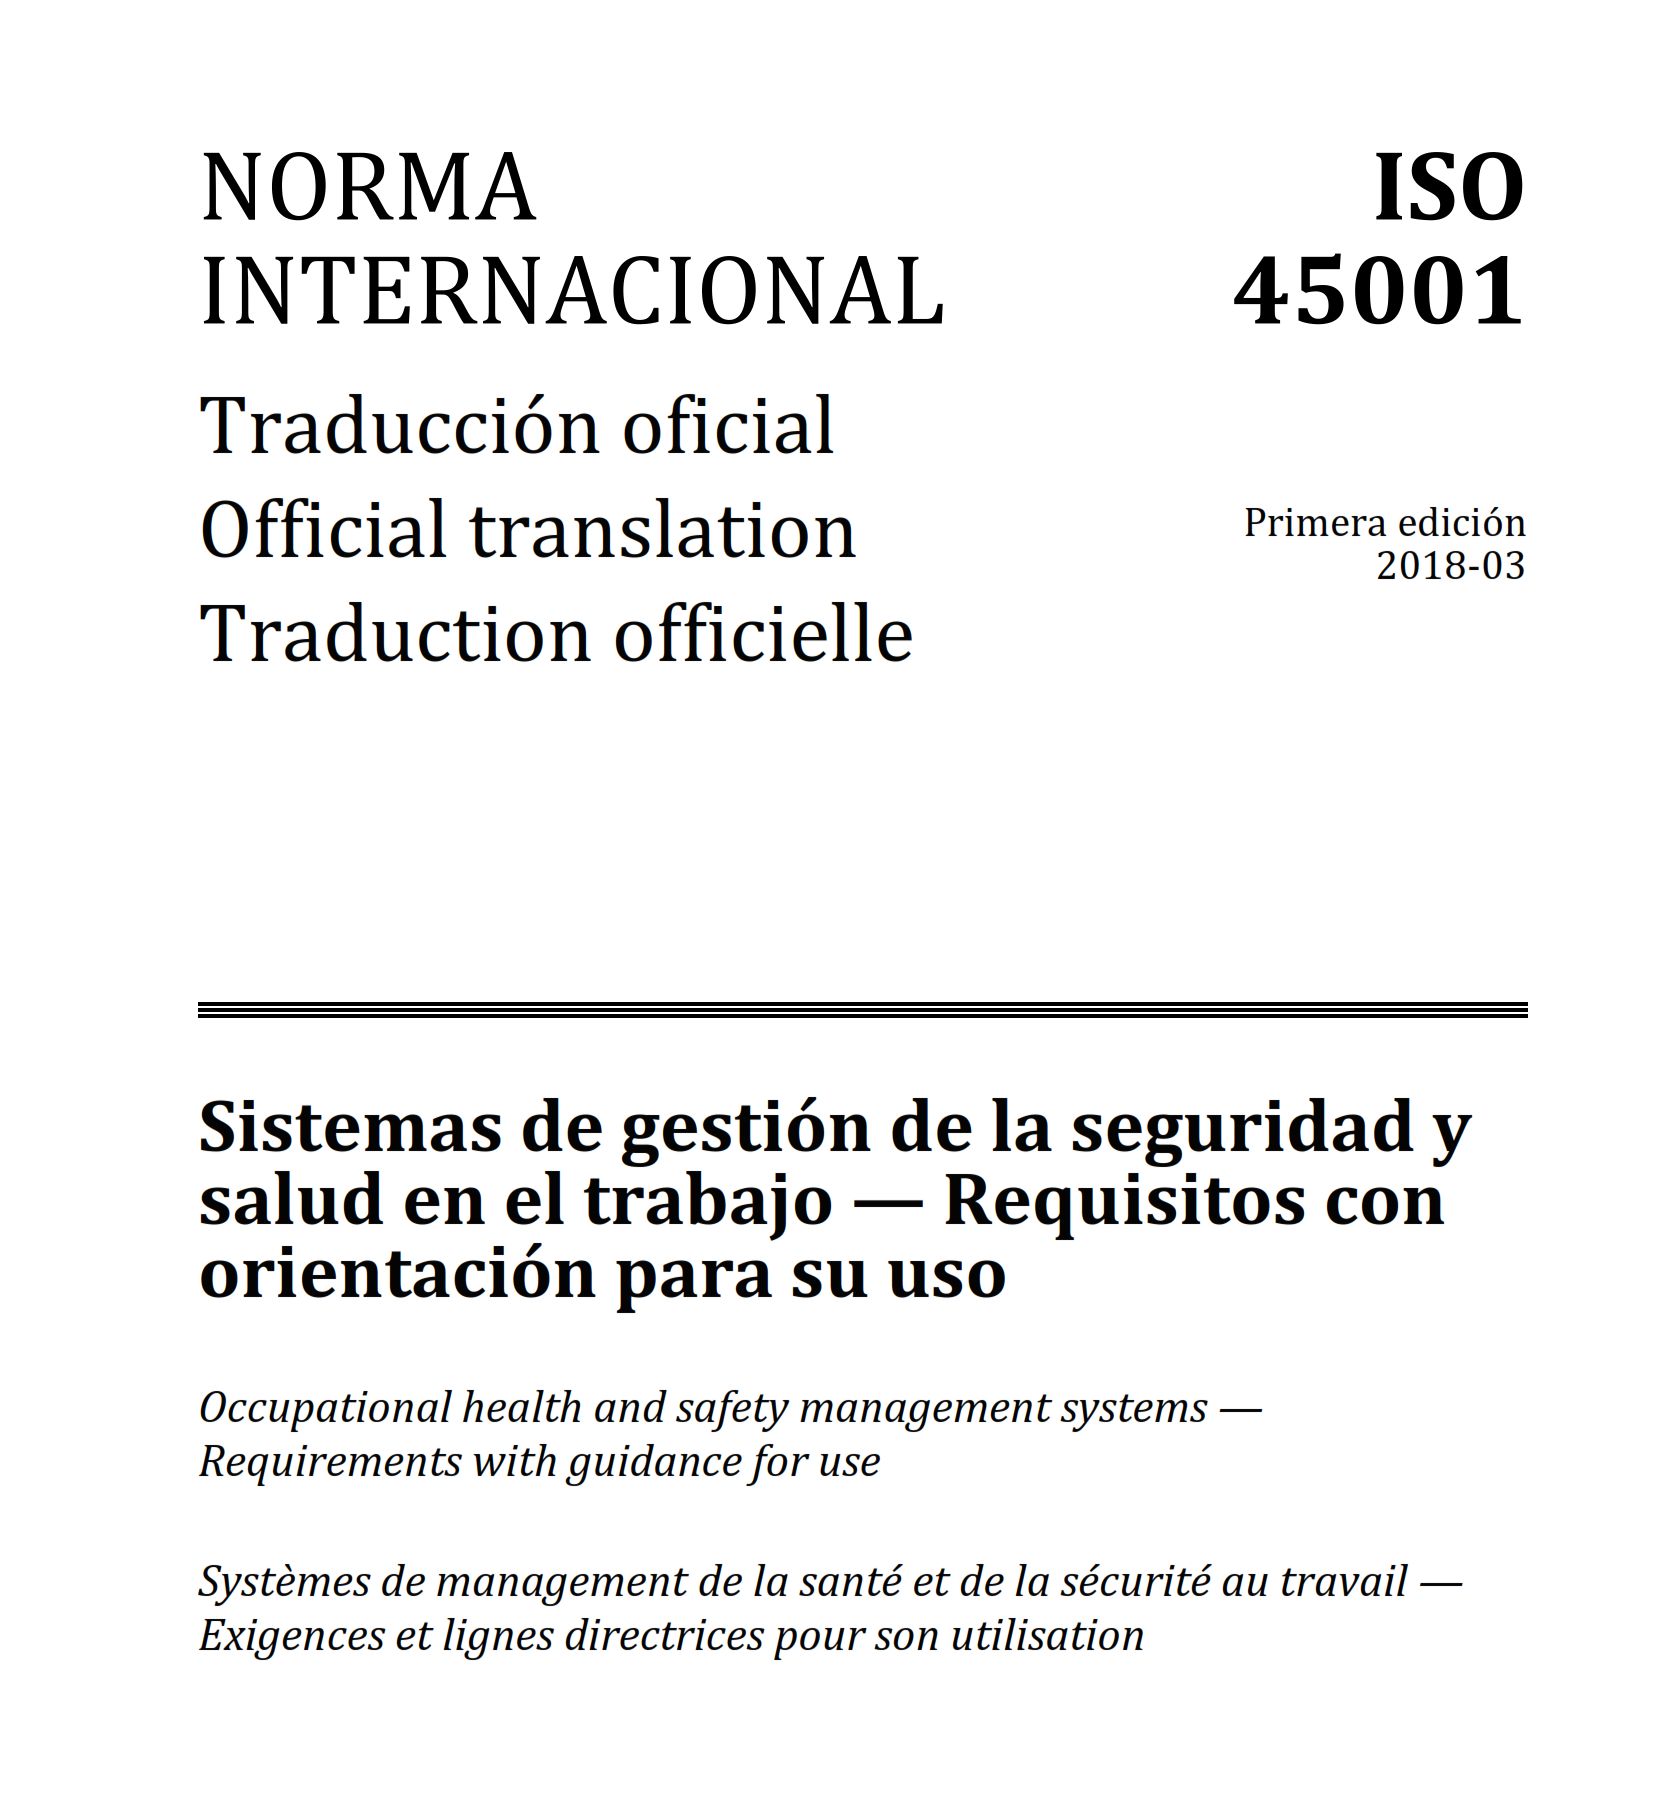 Publicada la ISO 45001, primera norma internacional de Gestión de la Seguridad y Salud en el Trabajo